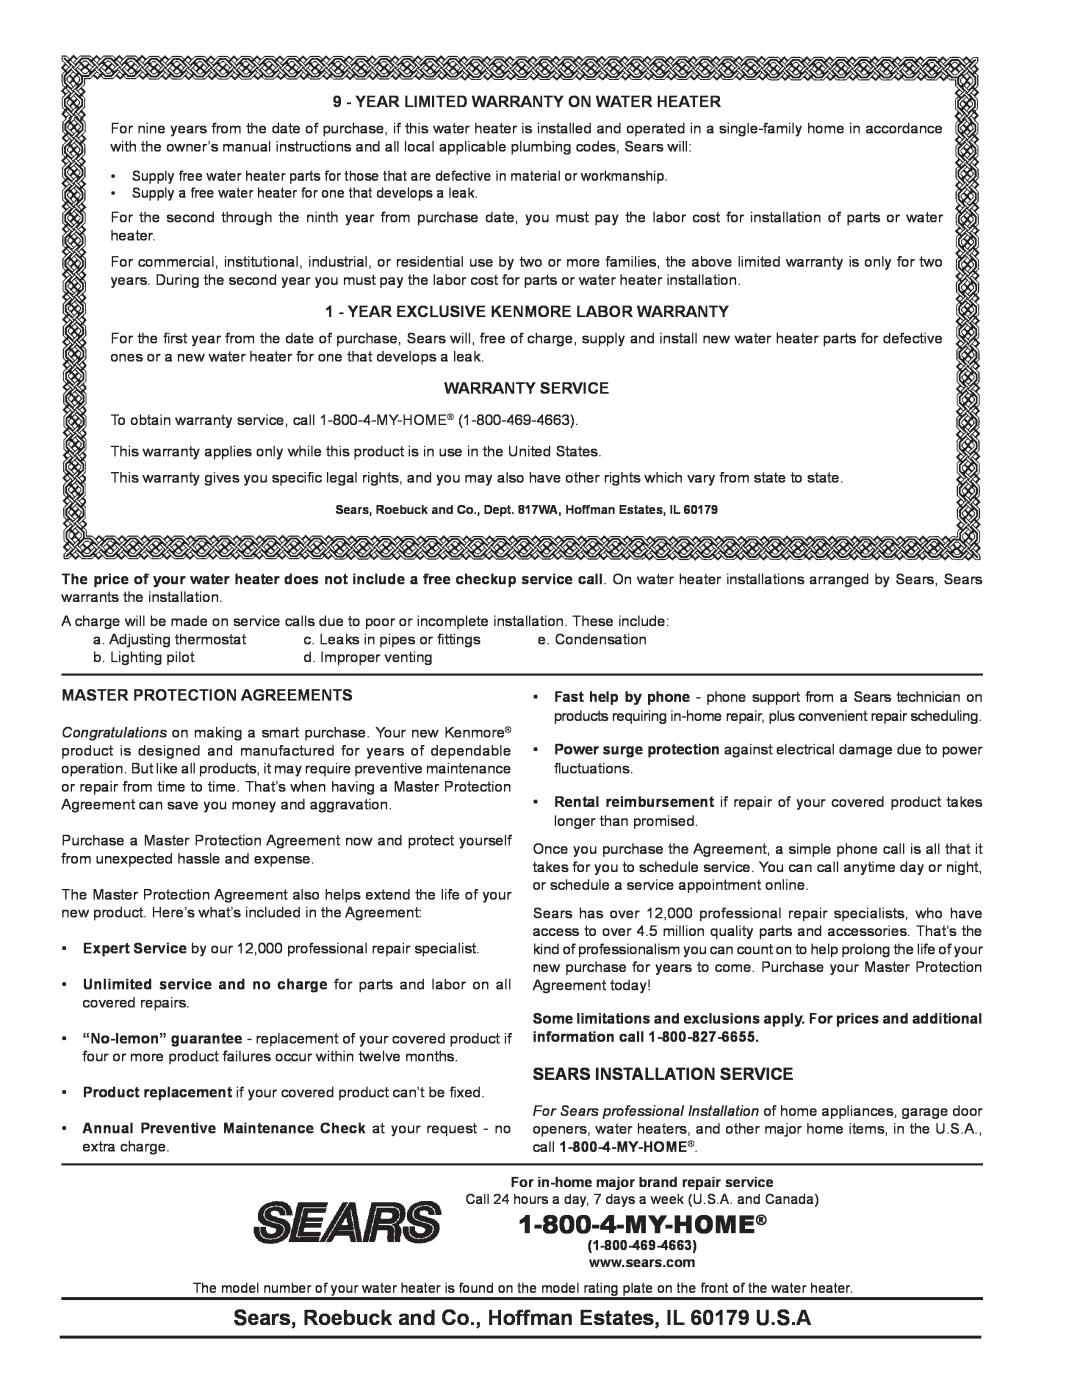 Kenmore 153.339161, 153.33968 Sears Installation Service, Year Limited Warranty On Water Heater, Warranty Service 